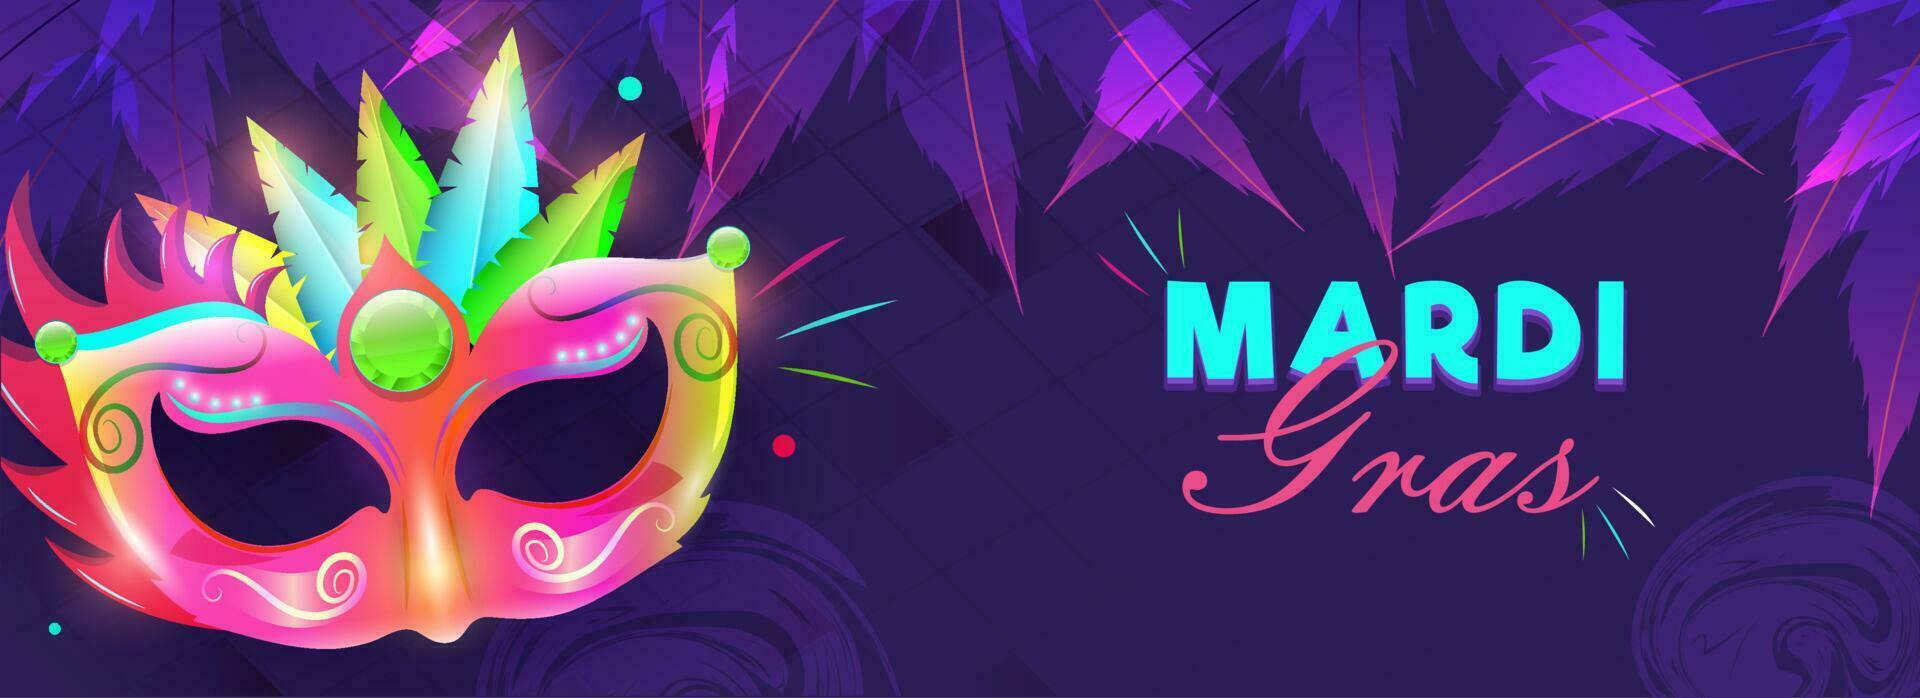 bunt Party Maskerade Illustration auf lila Hintergrund zum Karneval gras Karneval Header oder Banner Design. vektor